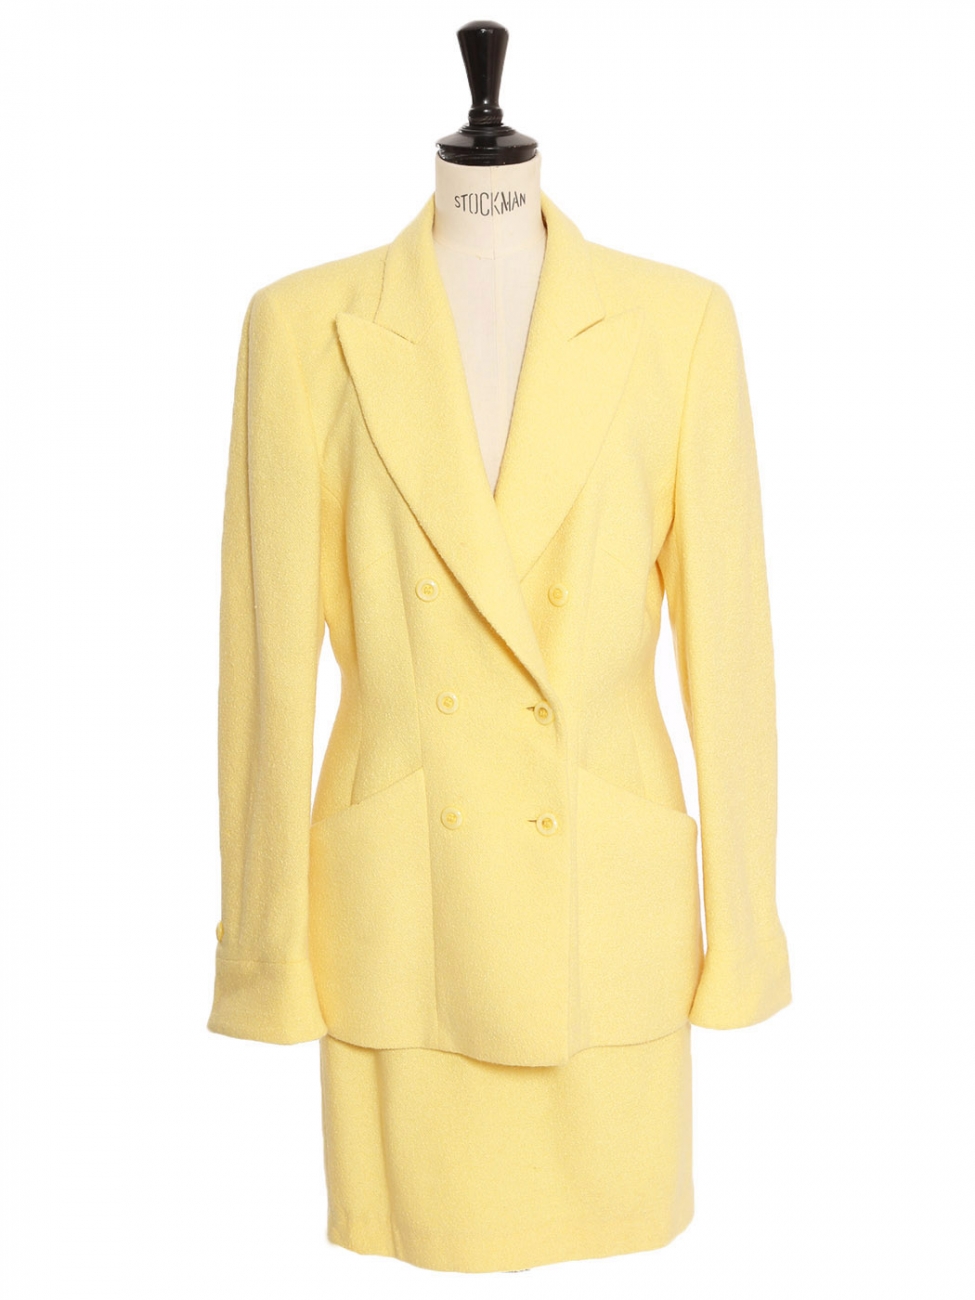 Escada yellow peacoat  Jackets for women, Clothes design, Escada